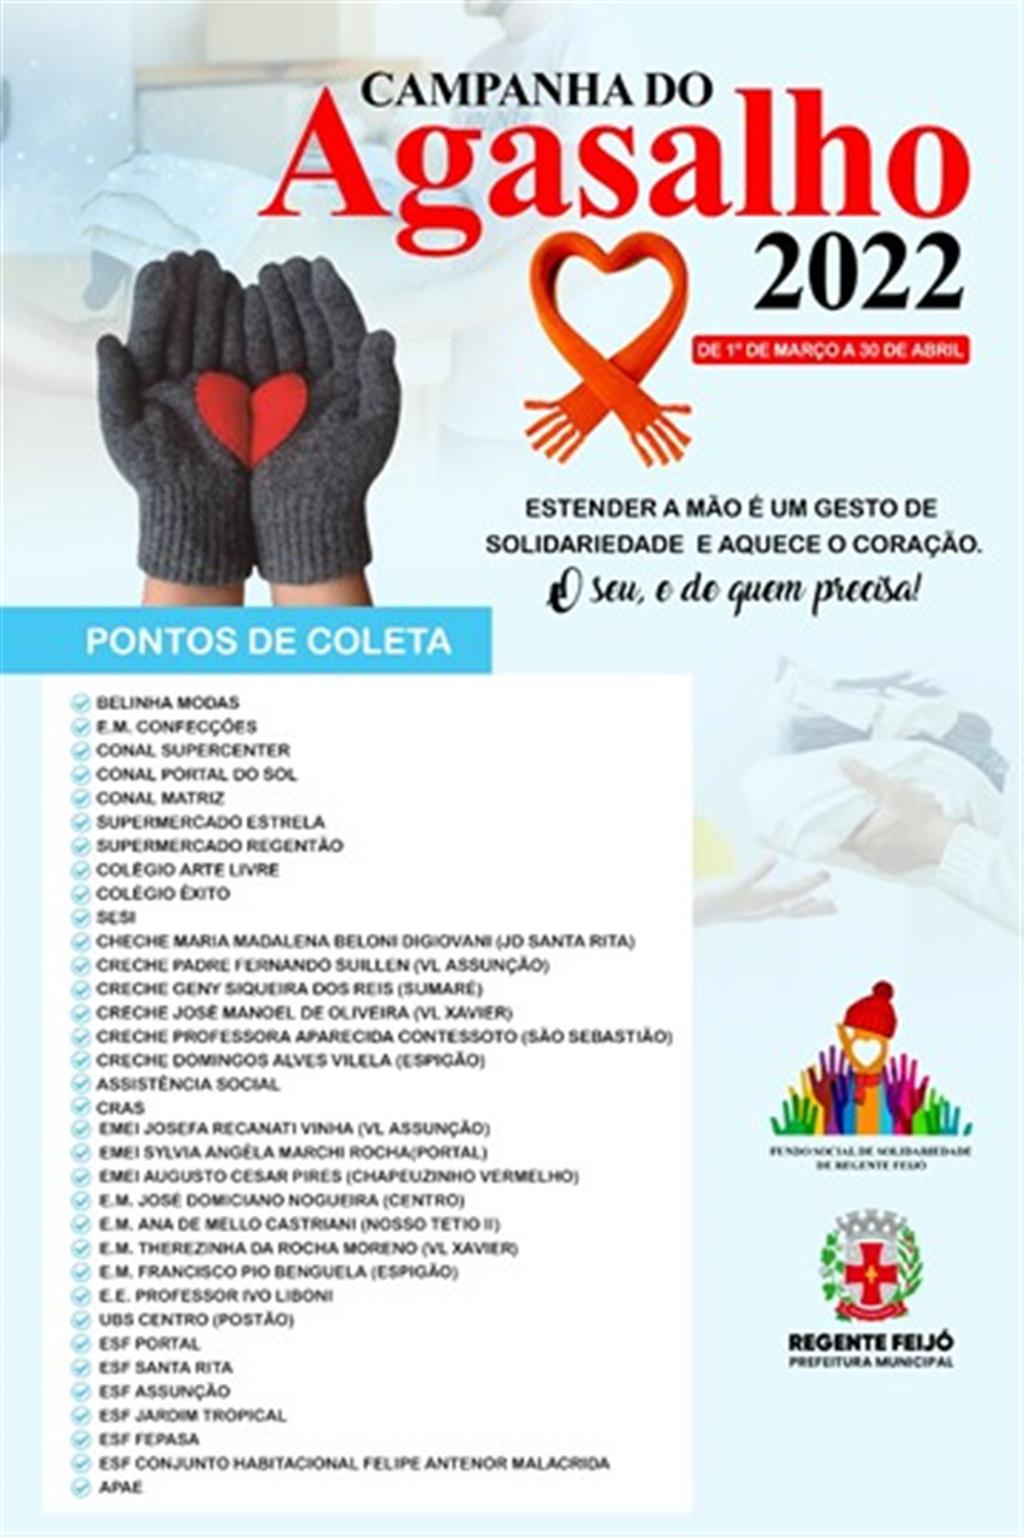 FUNDO SOCIAL: Campanha do Agasalho 2022